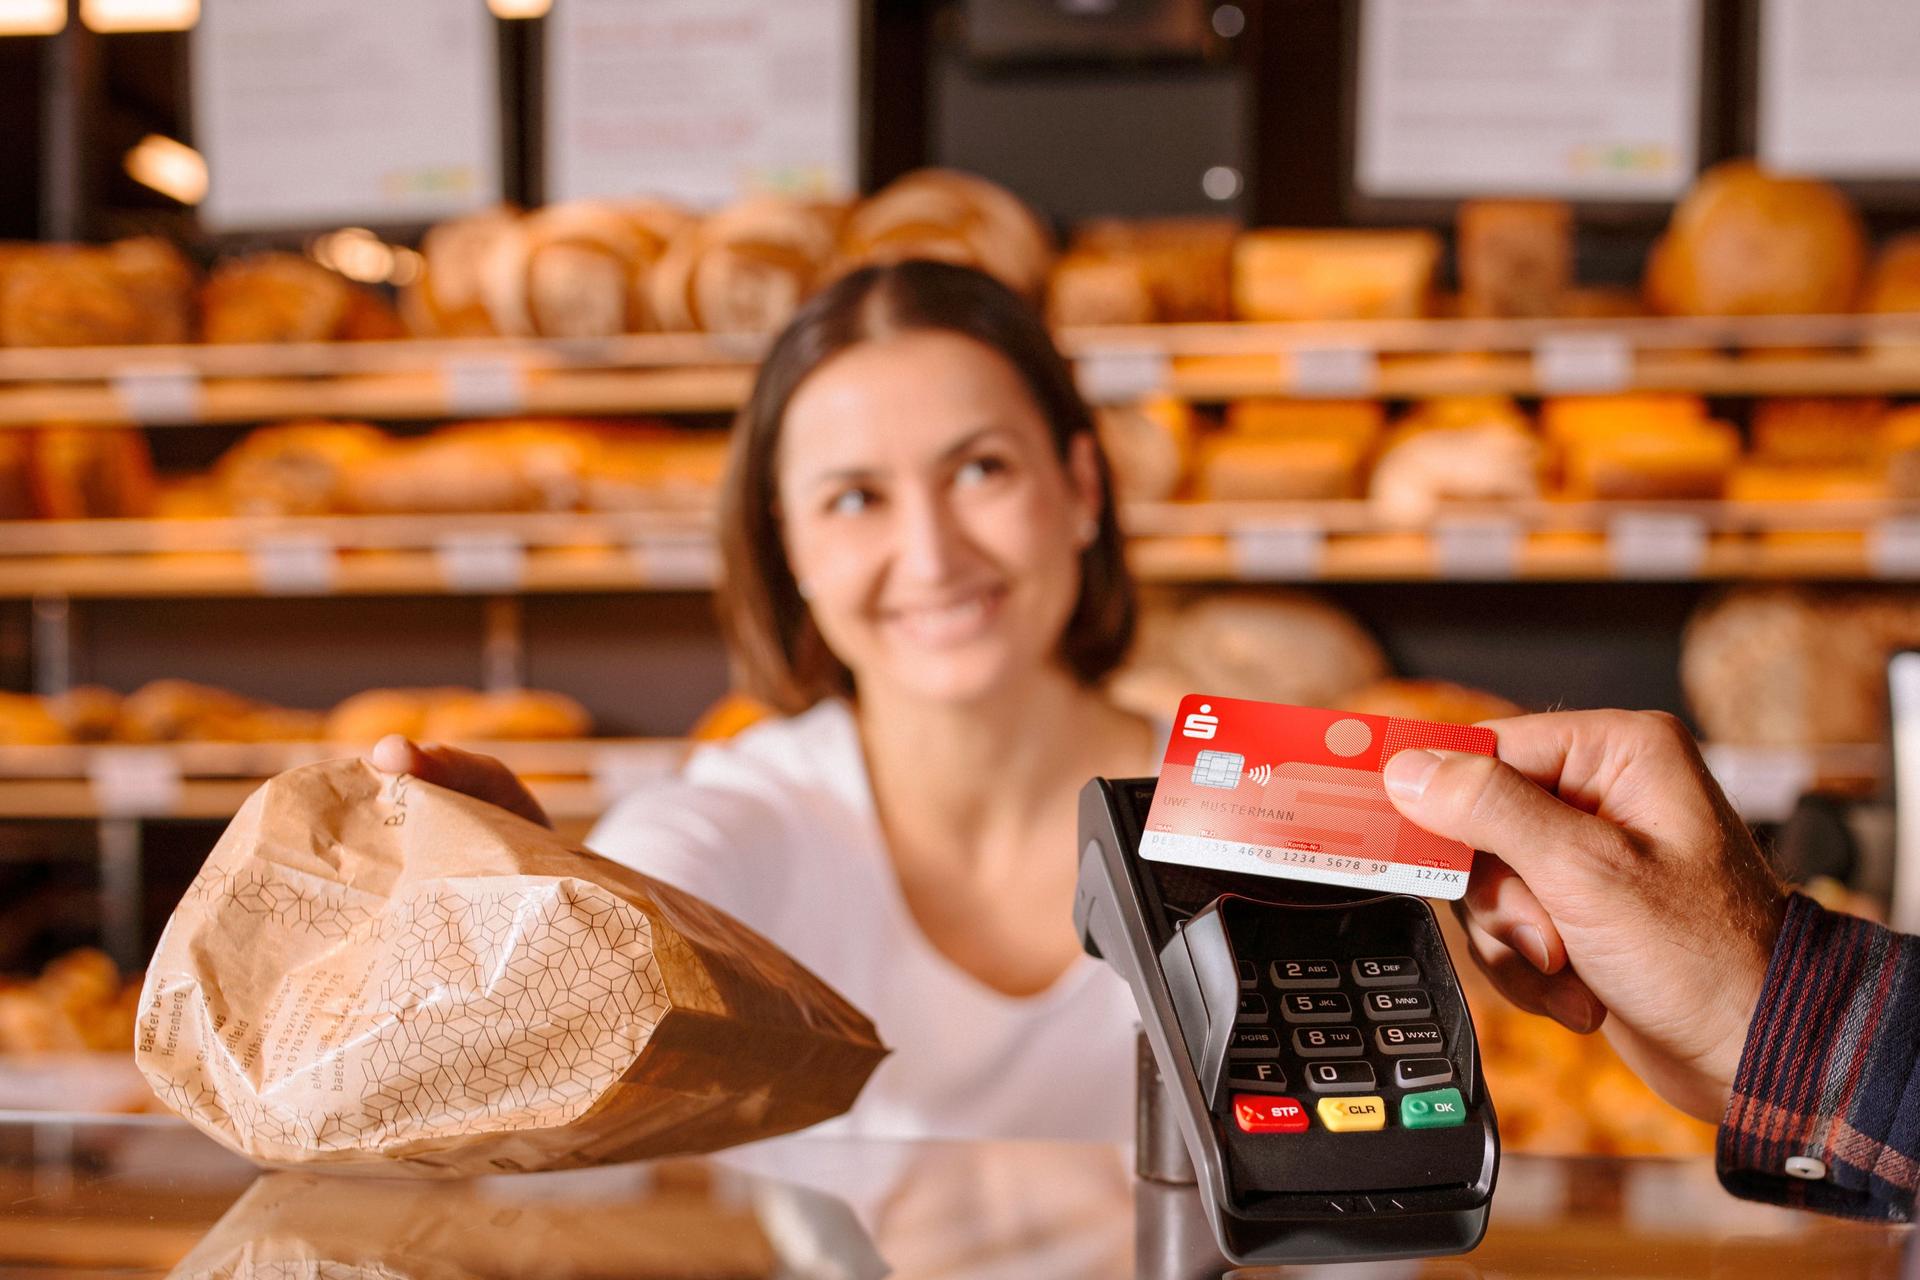 Person zahlt mit Sparkassen-Bankkarte in einer Bäckerei. Die Fachverkäuferin lächelt und reicht eine Papiertüte über den Tresen.